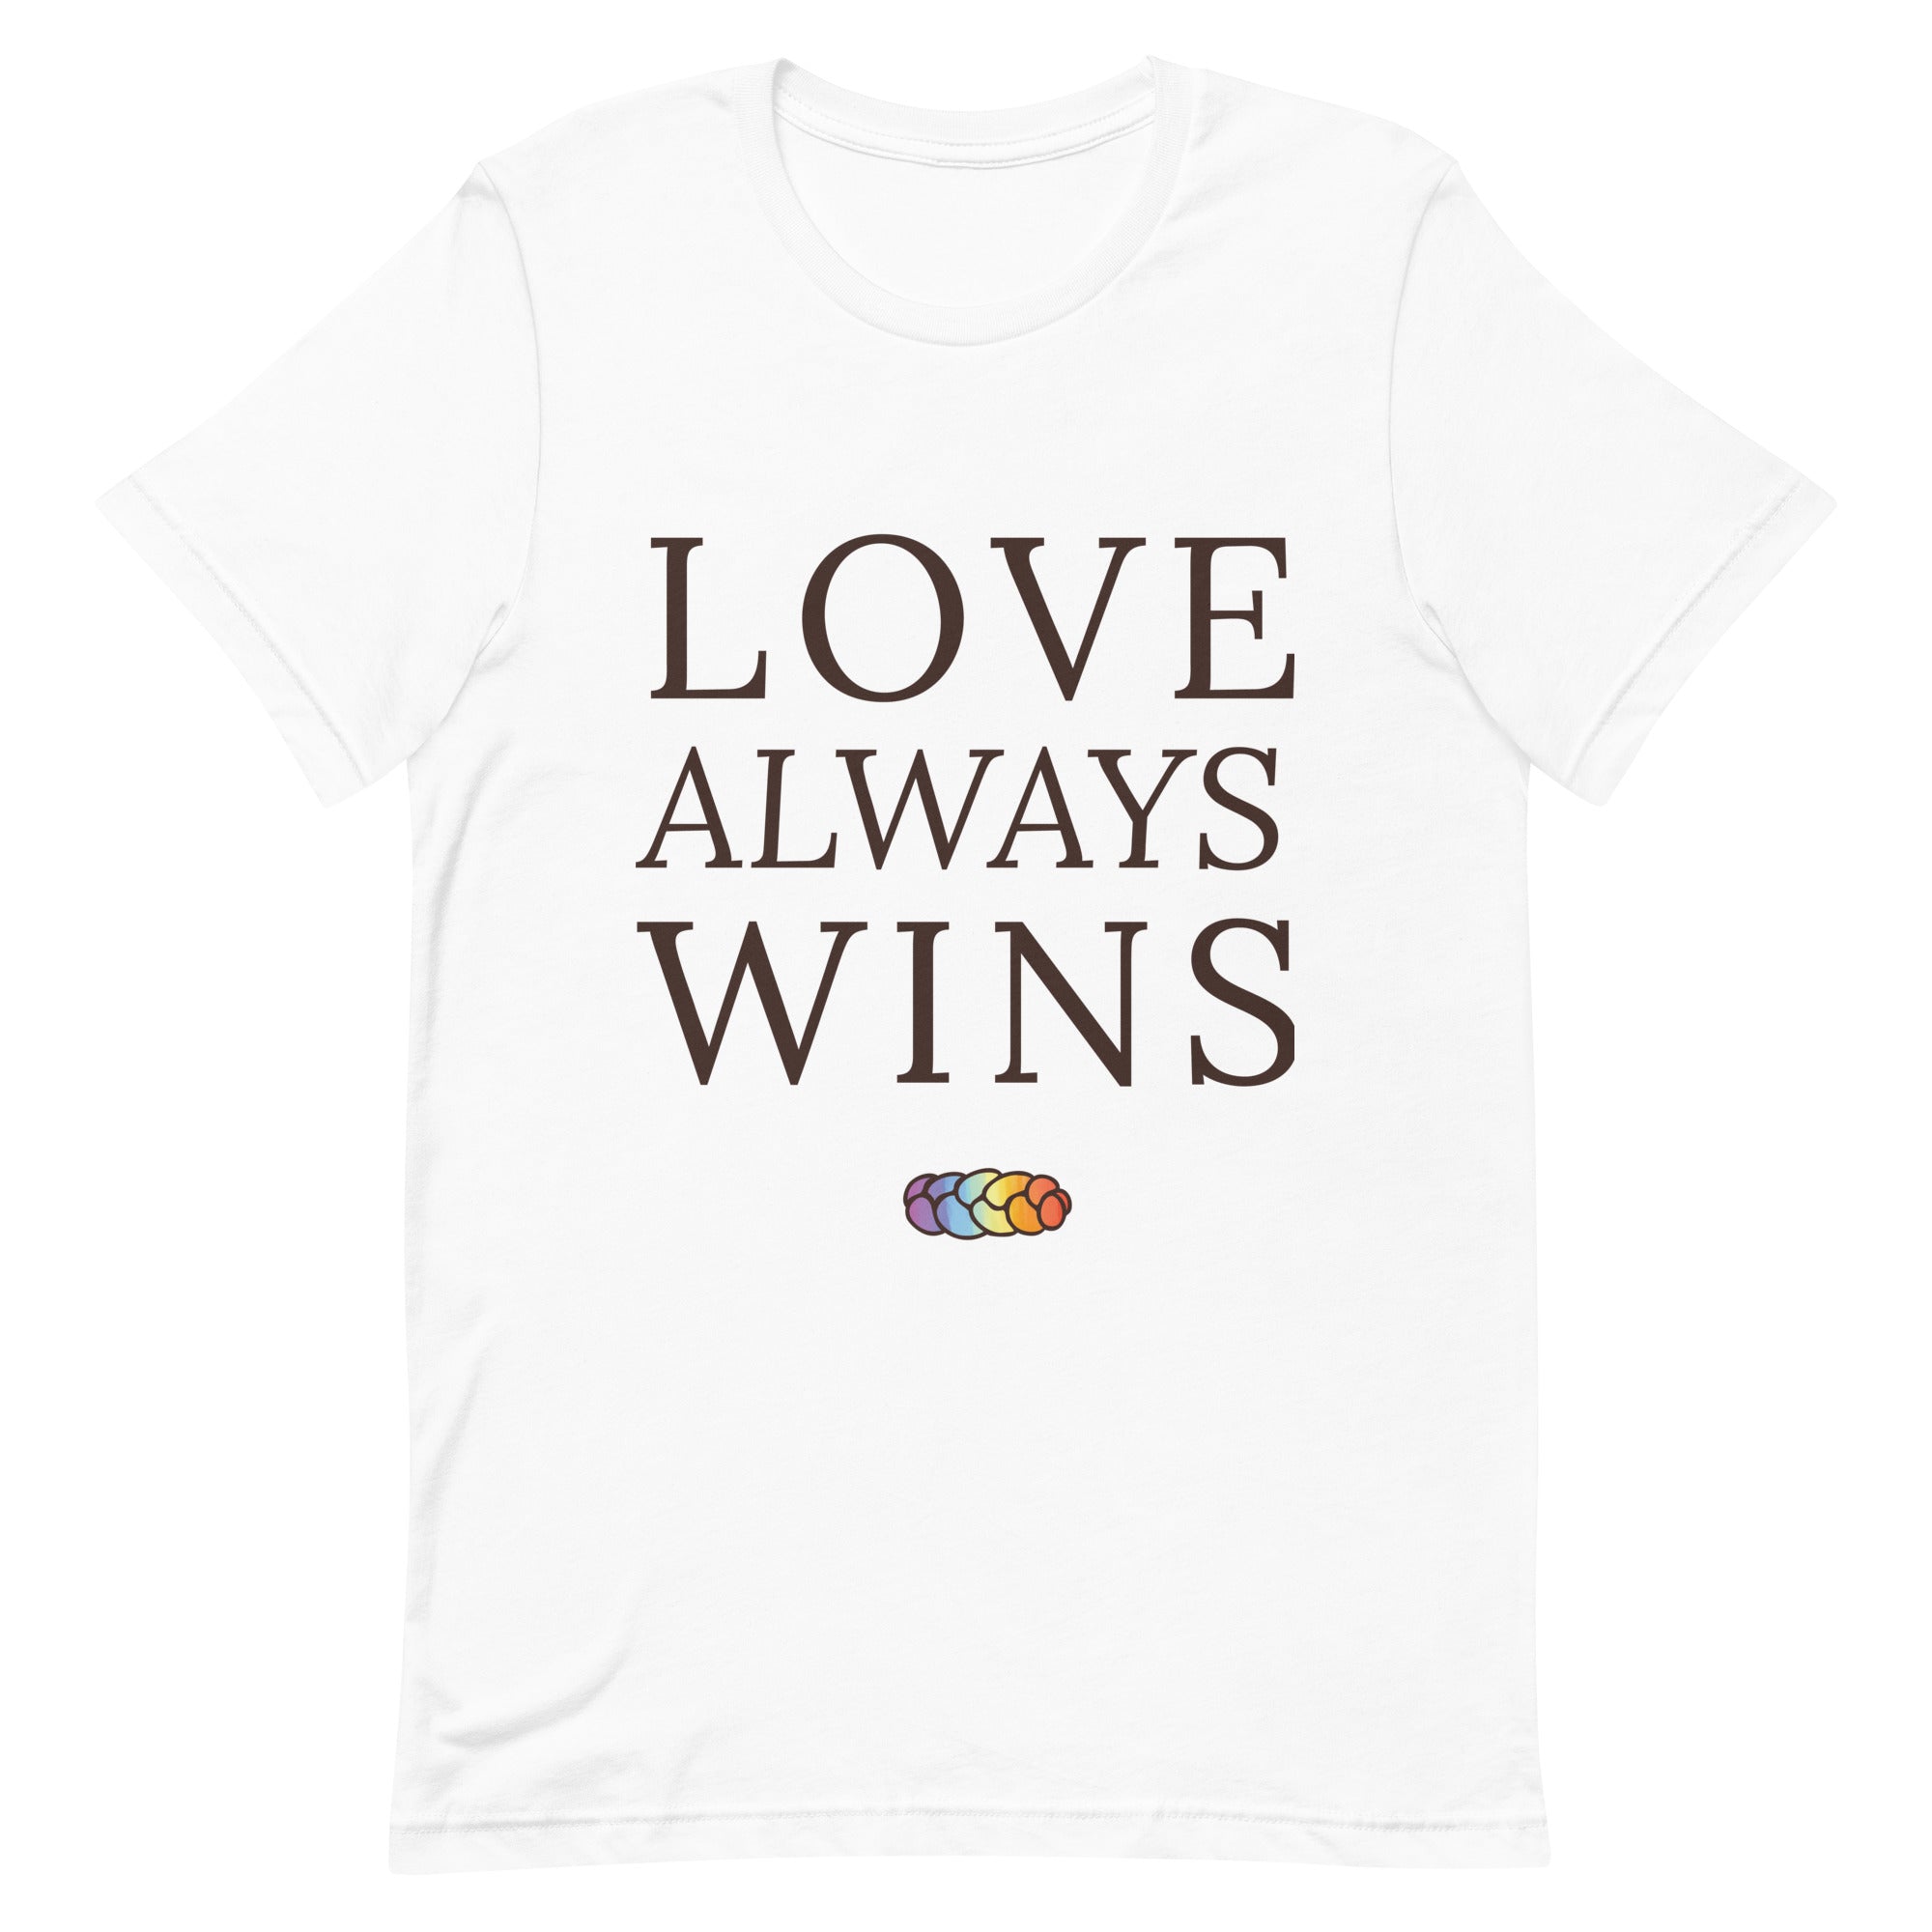 Love Always Wins: White